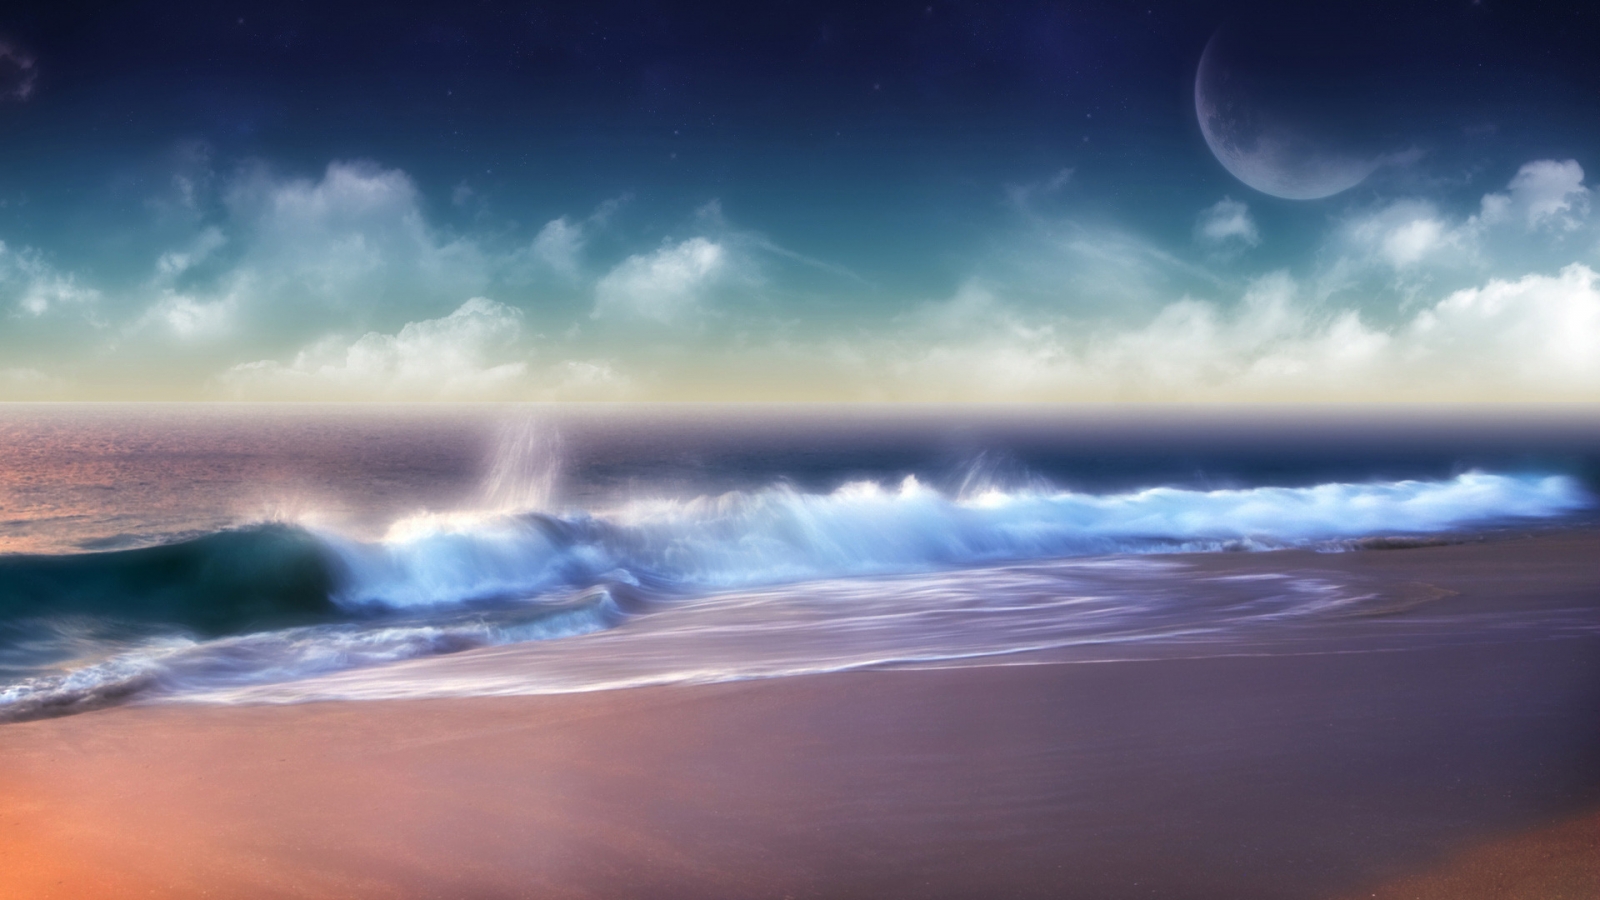 Superb Ocean Sunset for 1600 x 900 HDTV resolution